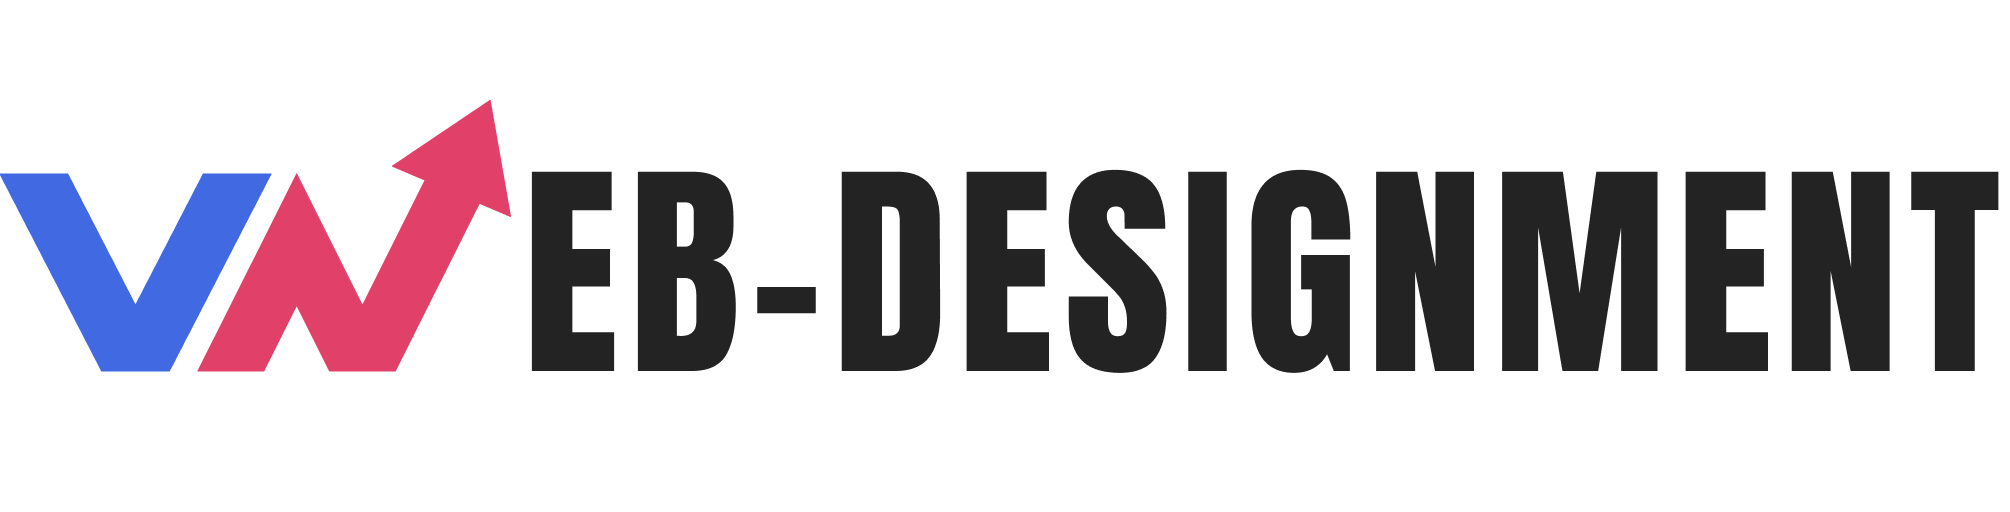 Webdesign Agentur WEB-DESIGNMENT - Agentur für Websites - Agentur Website erstellen - Miltenberg - Logo